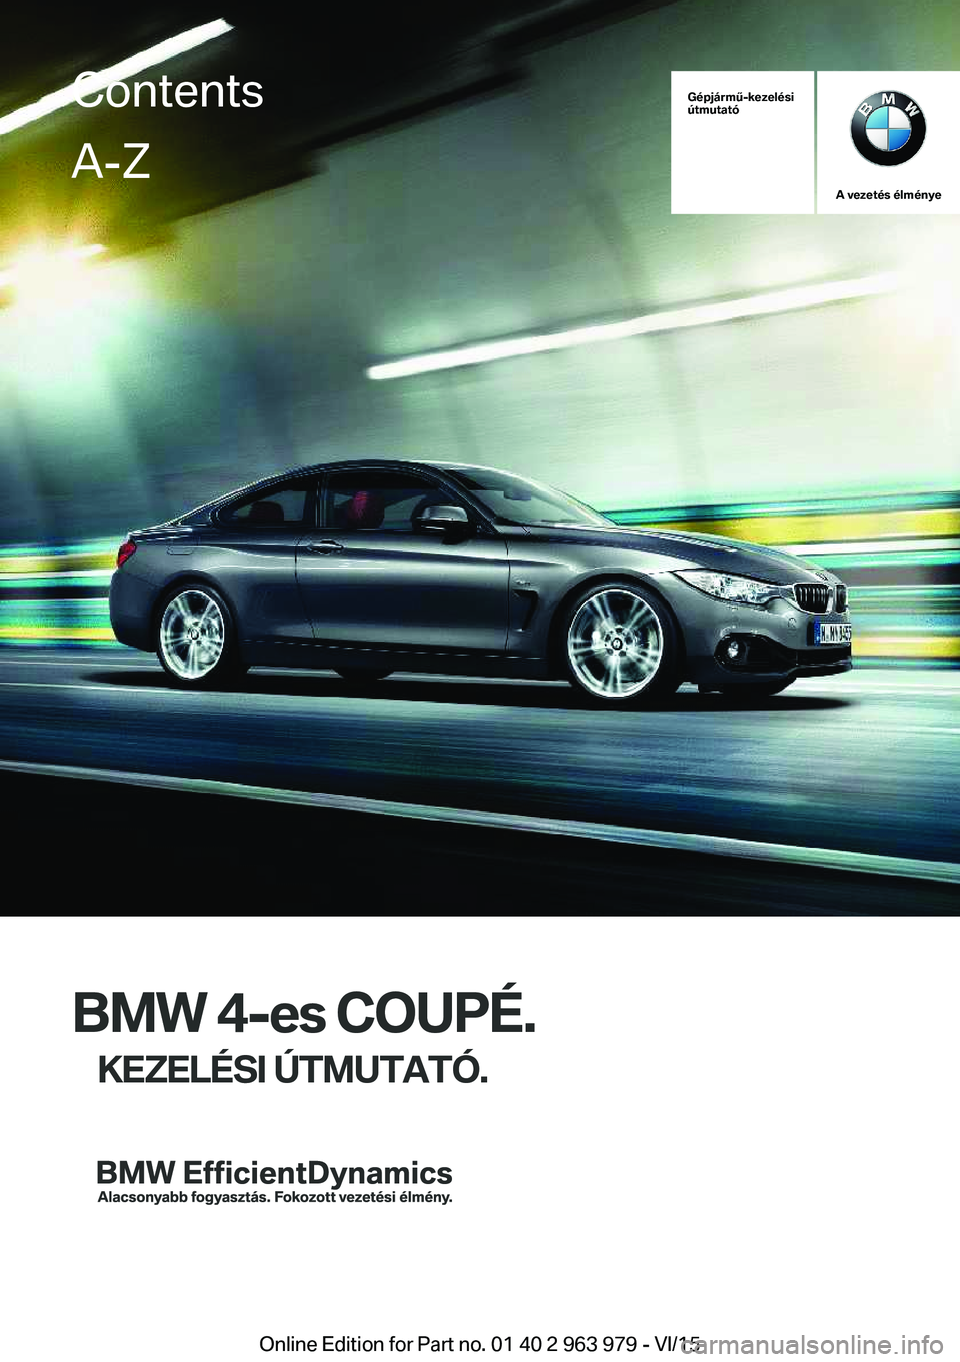 BMW 4 SERIES COUPE 2016  Kezelési útmutató (in Hungarian) Gépjármű-kezelési
útmutató
A vezetés élménye
BMW 4-es COUPÉ.
KEZELÉSI ÚTMUTATÓ.
ContentsA-Z
Online Edition for Part no. 01 40 2 963 979 - VI/15   